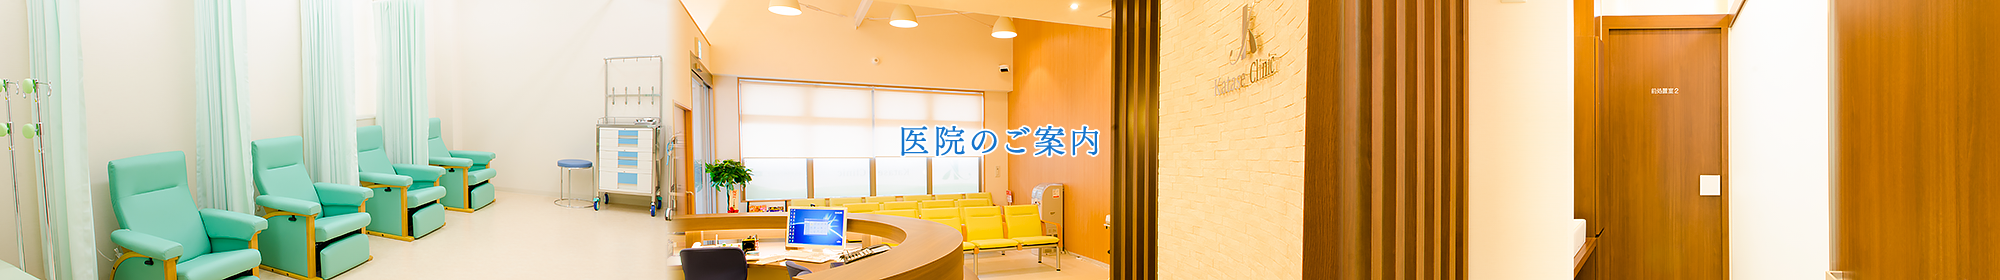 医院のご案内 | 大阪府河内長野市の内科・消化器内科「かたせ内科クリニック」